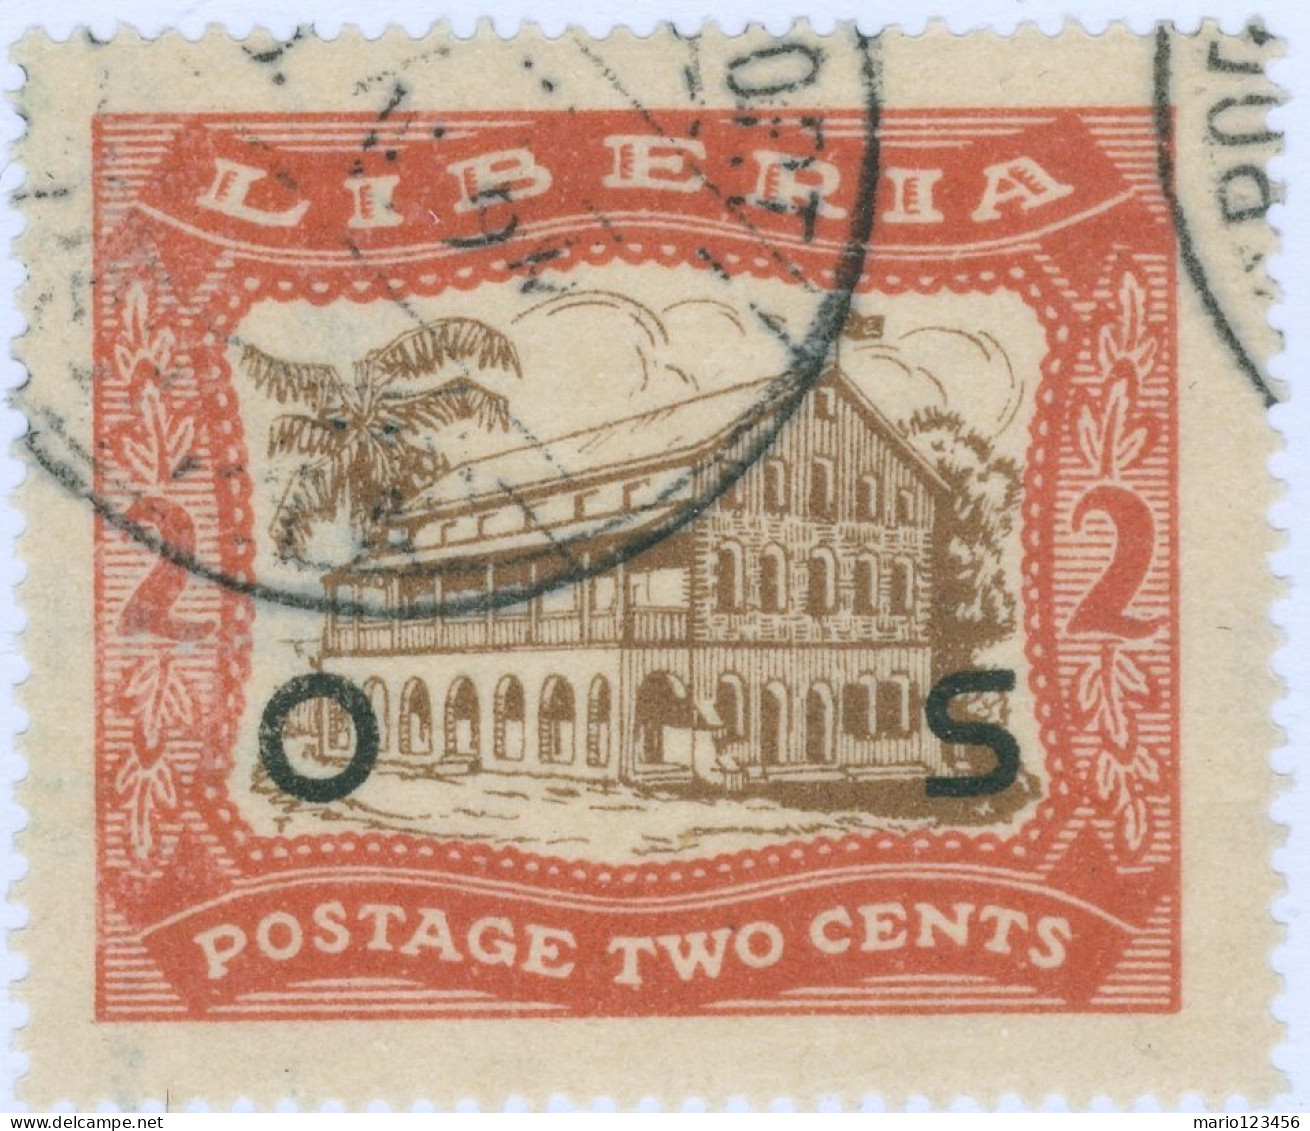 LIBERIA, PAESAGGI, LANDSCAPE, 1923, FRANCOBOLLI USATI Mi:LR D136, Scott:LR O142, Yt:LR S134 (0,60) - Liberia